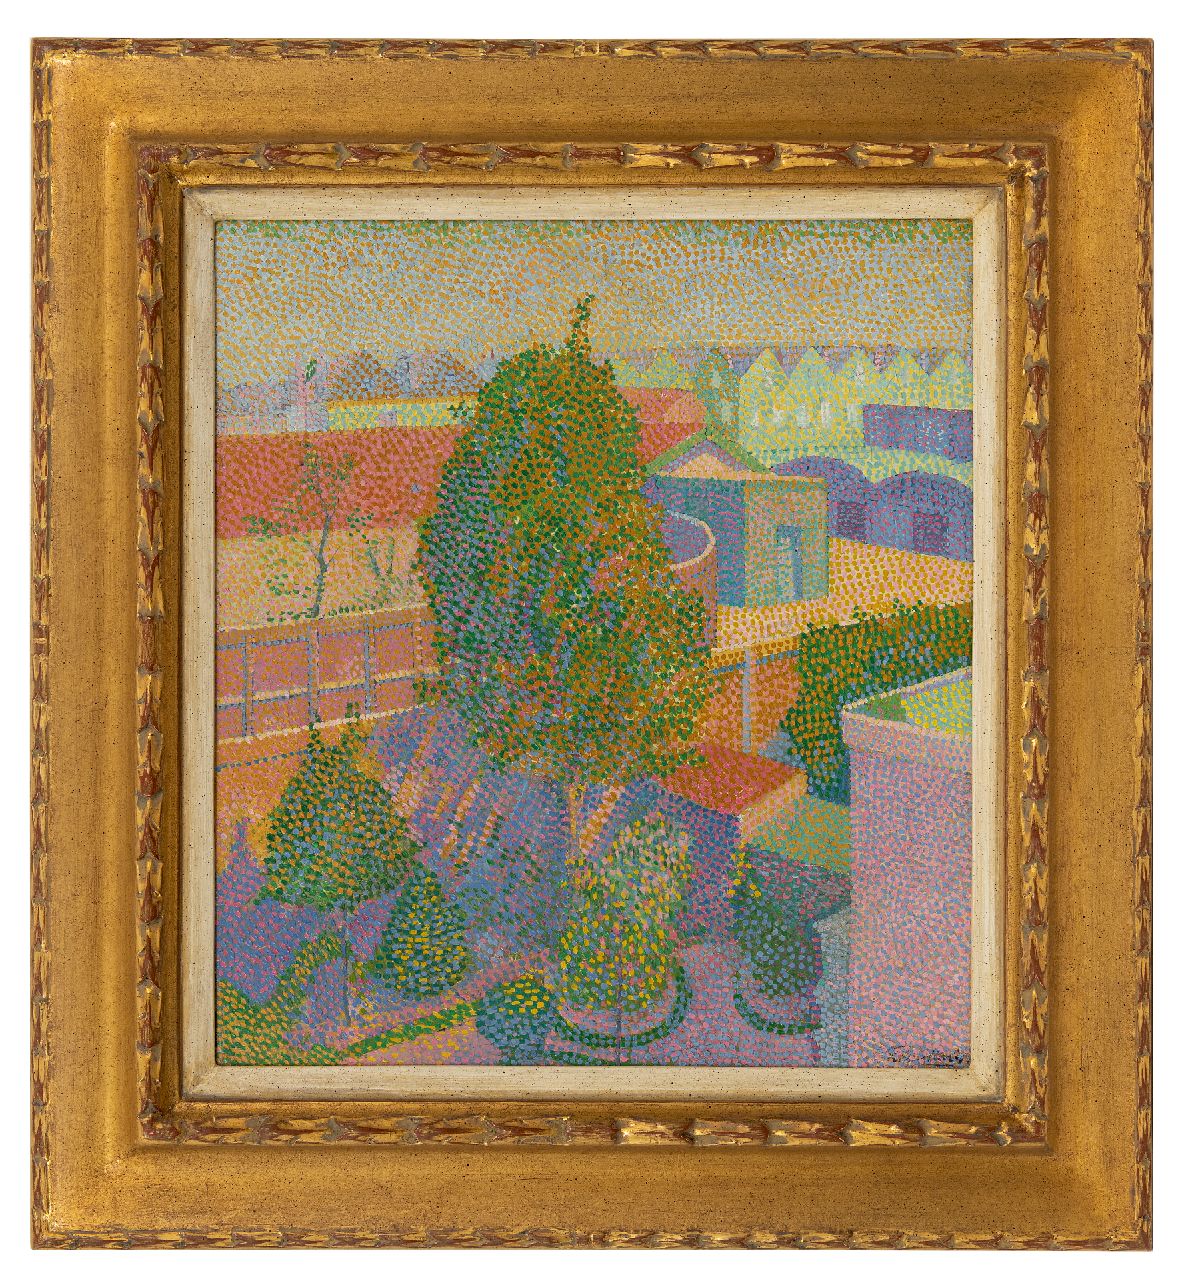 Maris F.J.J.  | Ferdinand Johannes Jacobus 'Frits' Maris | Schilderijen te koop aangeboden | Uitkijk over de stad, olieverf op doek 44,7 x 39,5 cm, gesigneerd rechtsonder